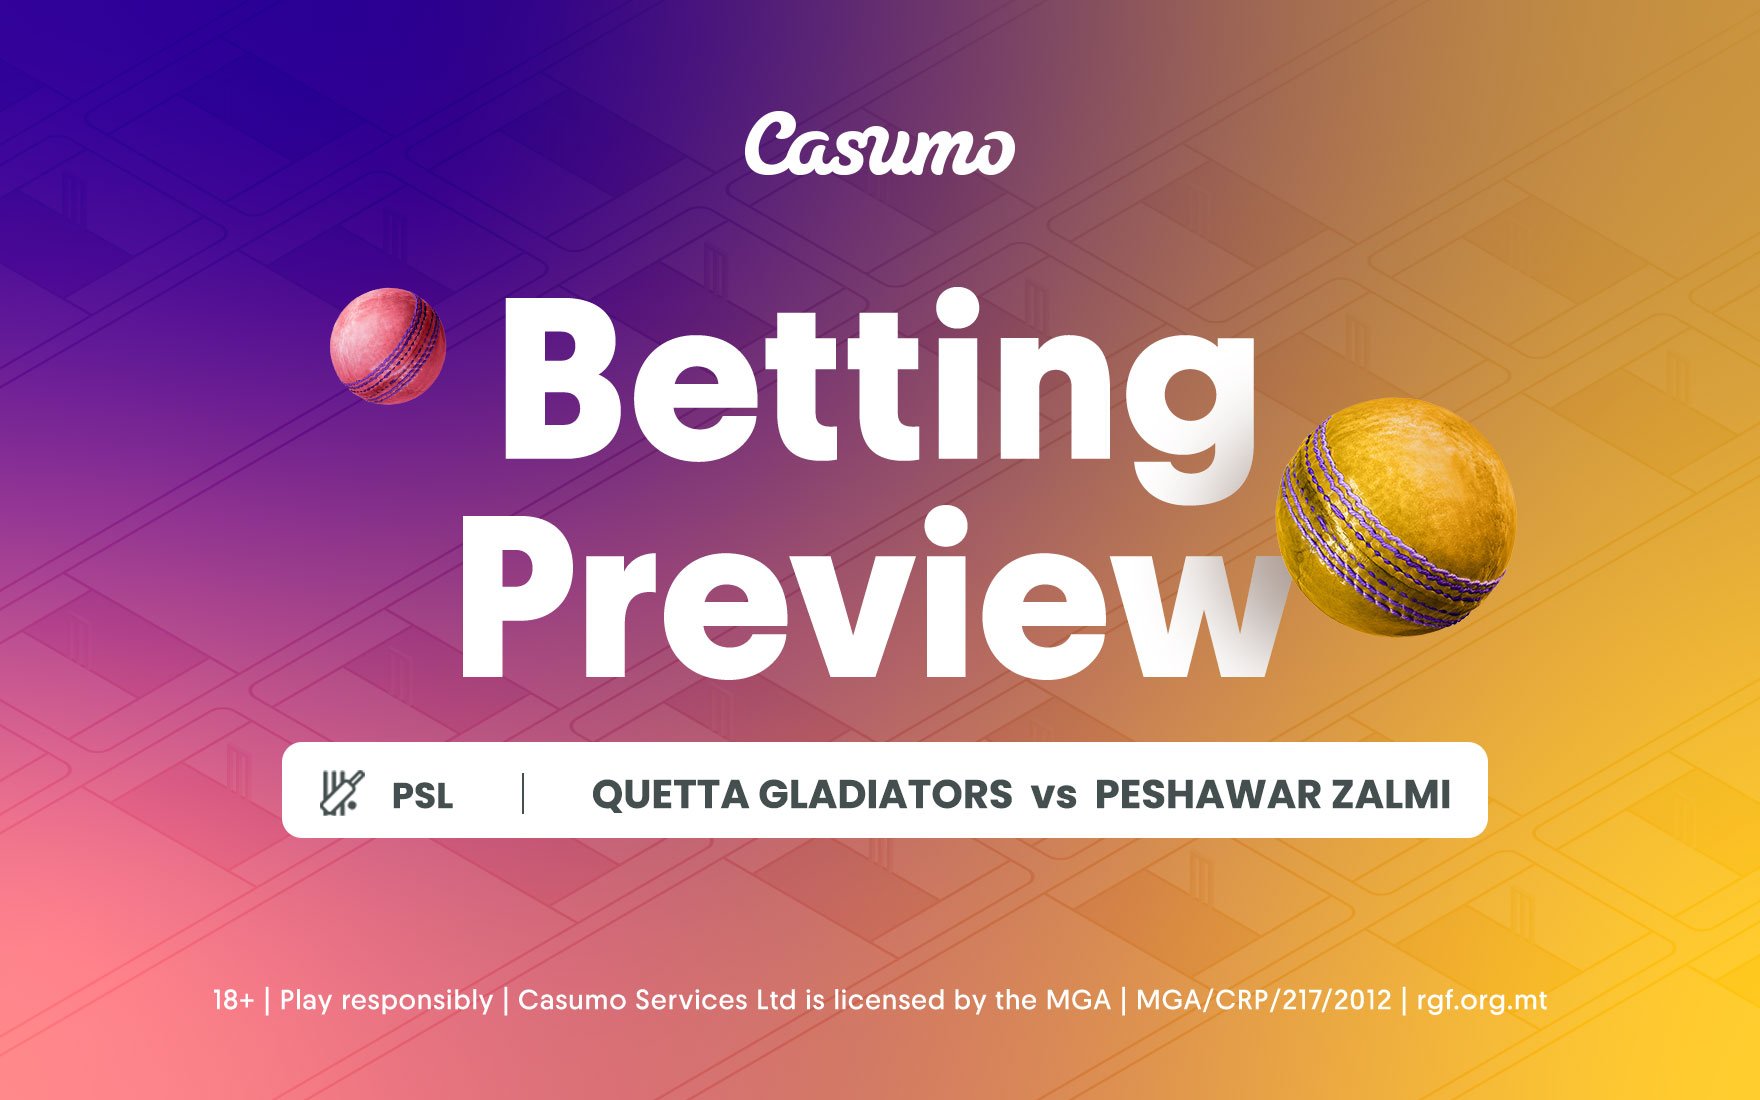 Quetta Gladiators vs Peshawar Zalmi betting tips